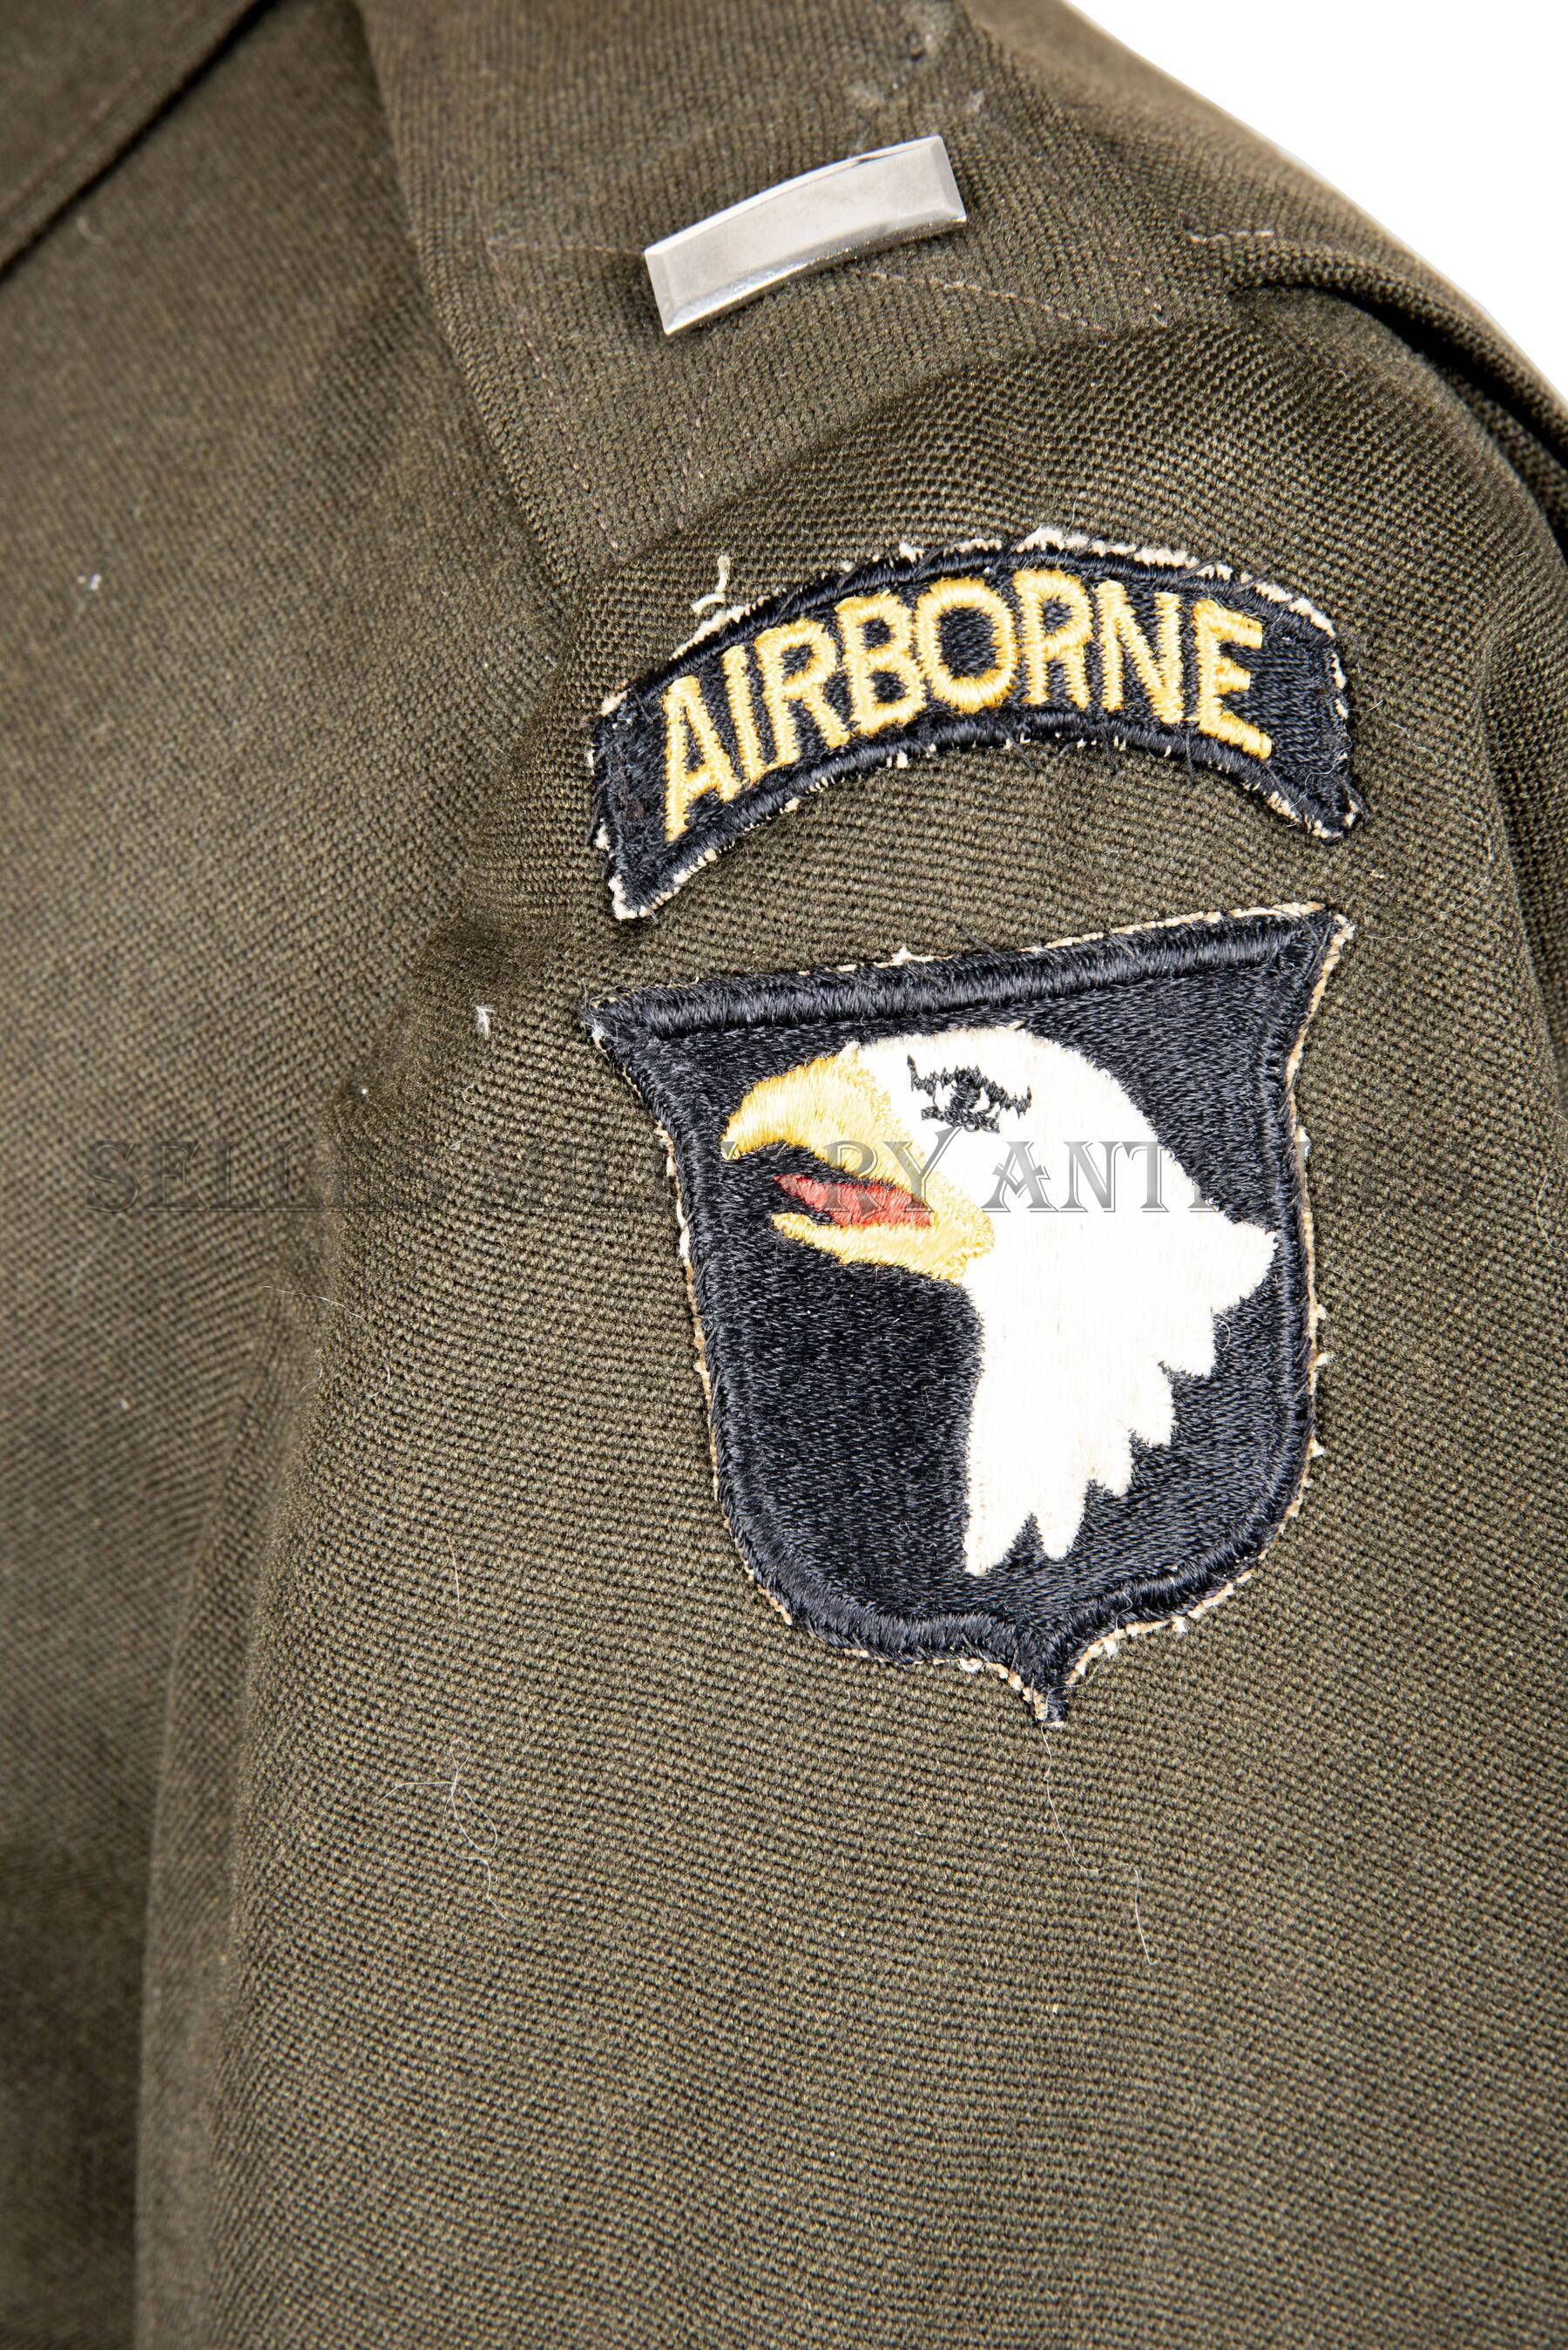 Grouping officier lieutenant 101st Airborne parachutiste US (7)